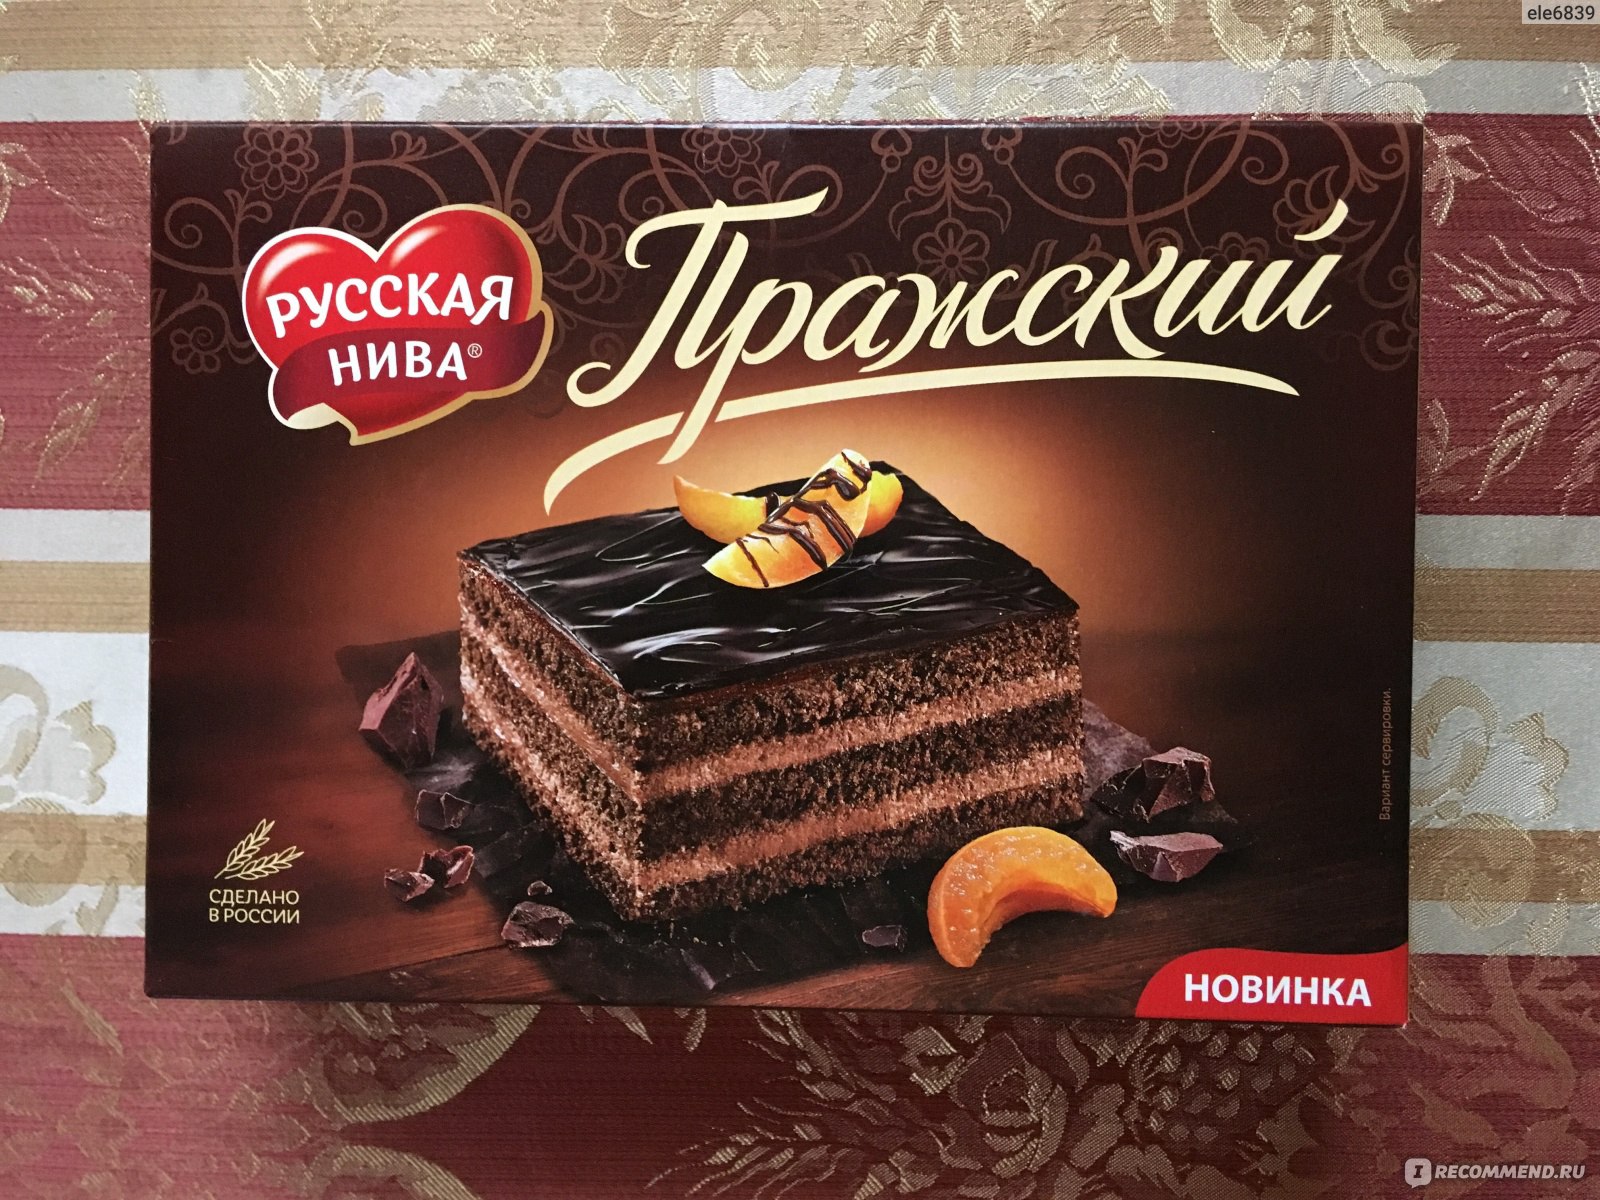 Торт Пражский 400г русская Нива